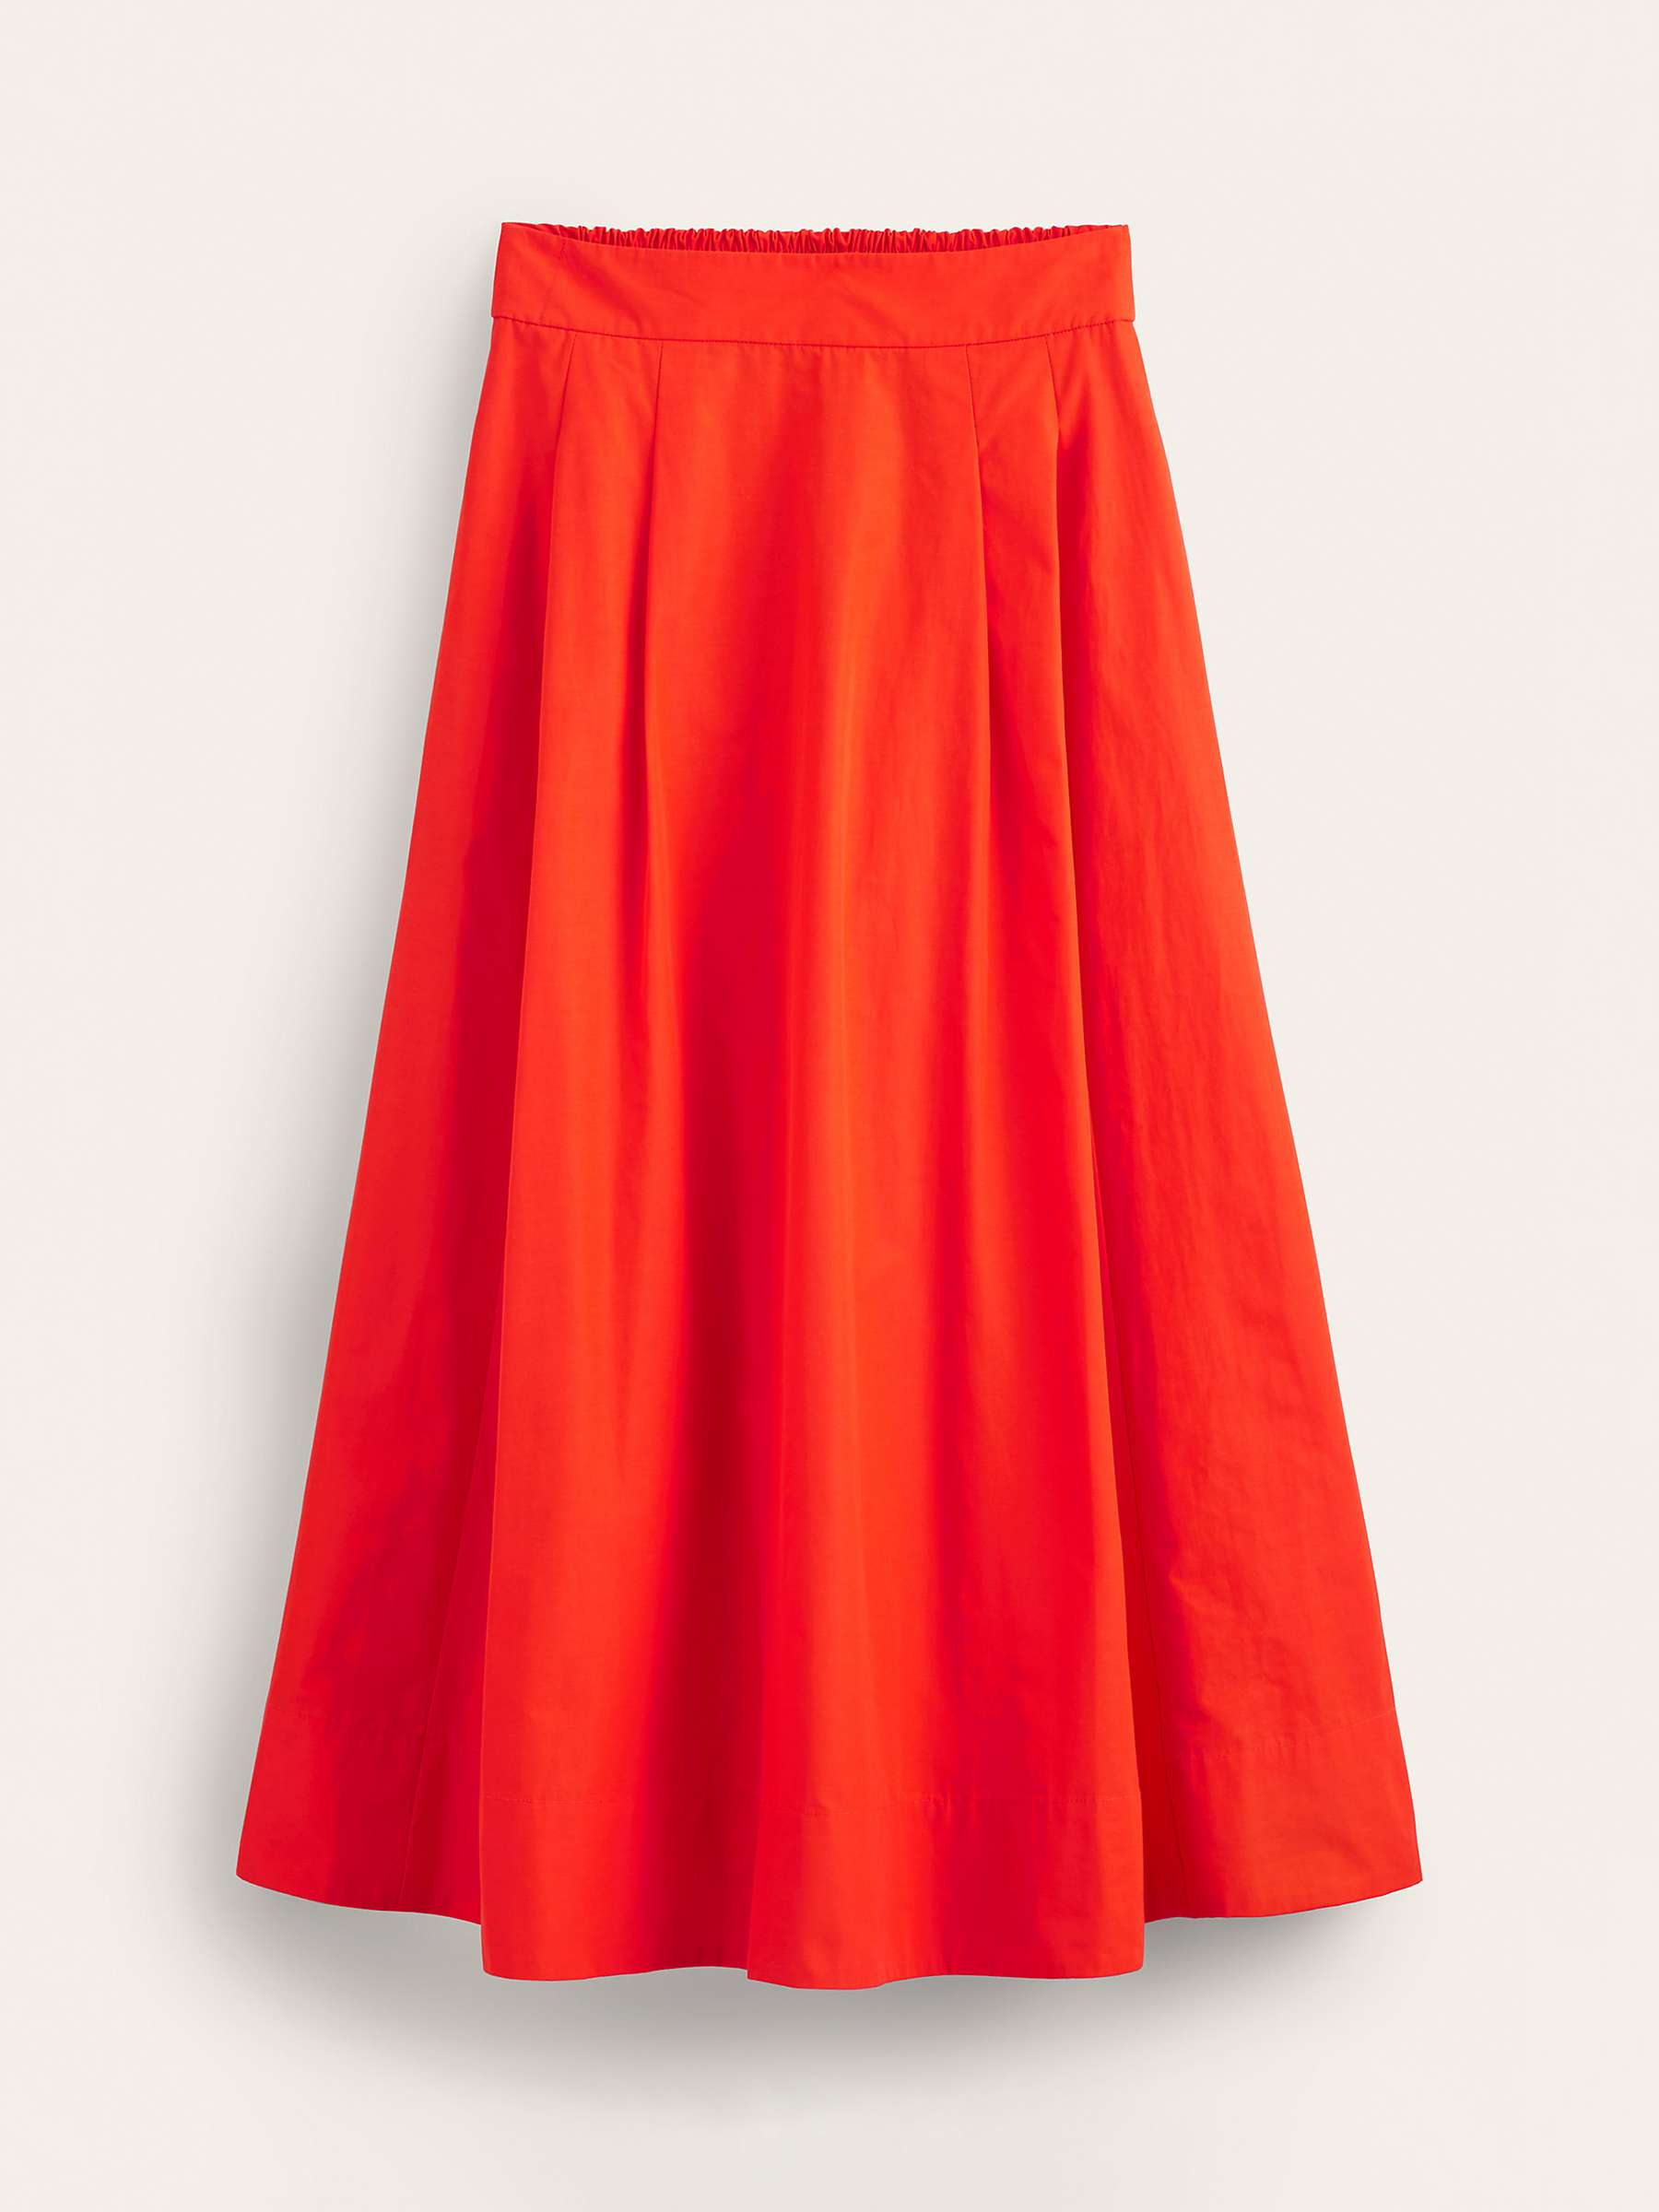 Boden Taffeta Pull-On Midi Skirt, Red at John Lewis & Partners